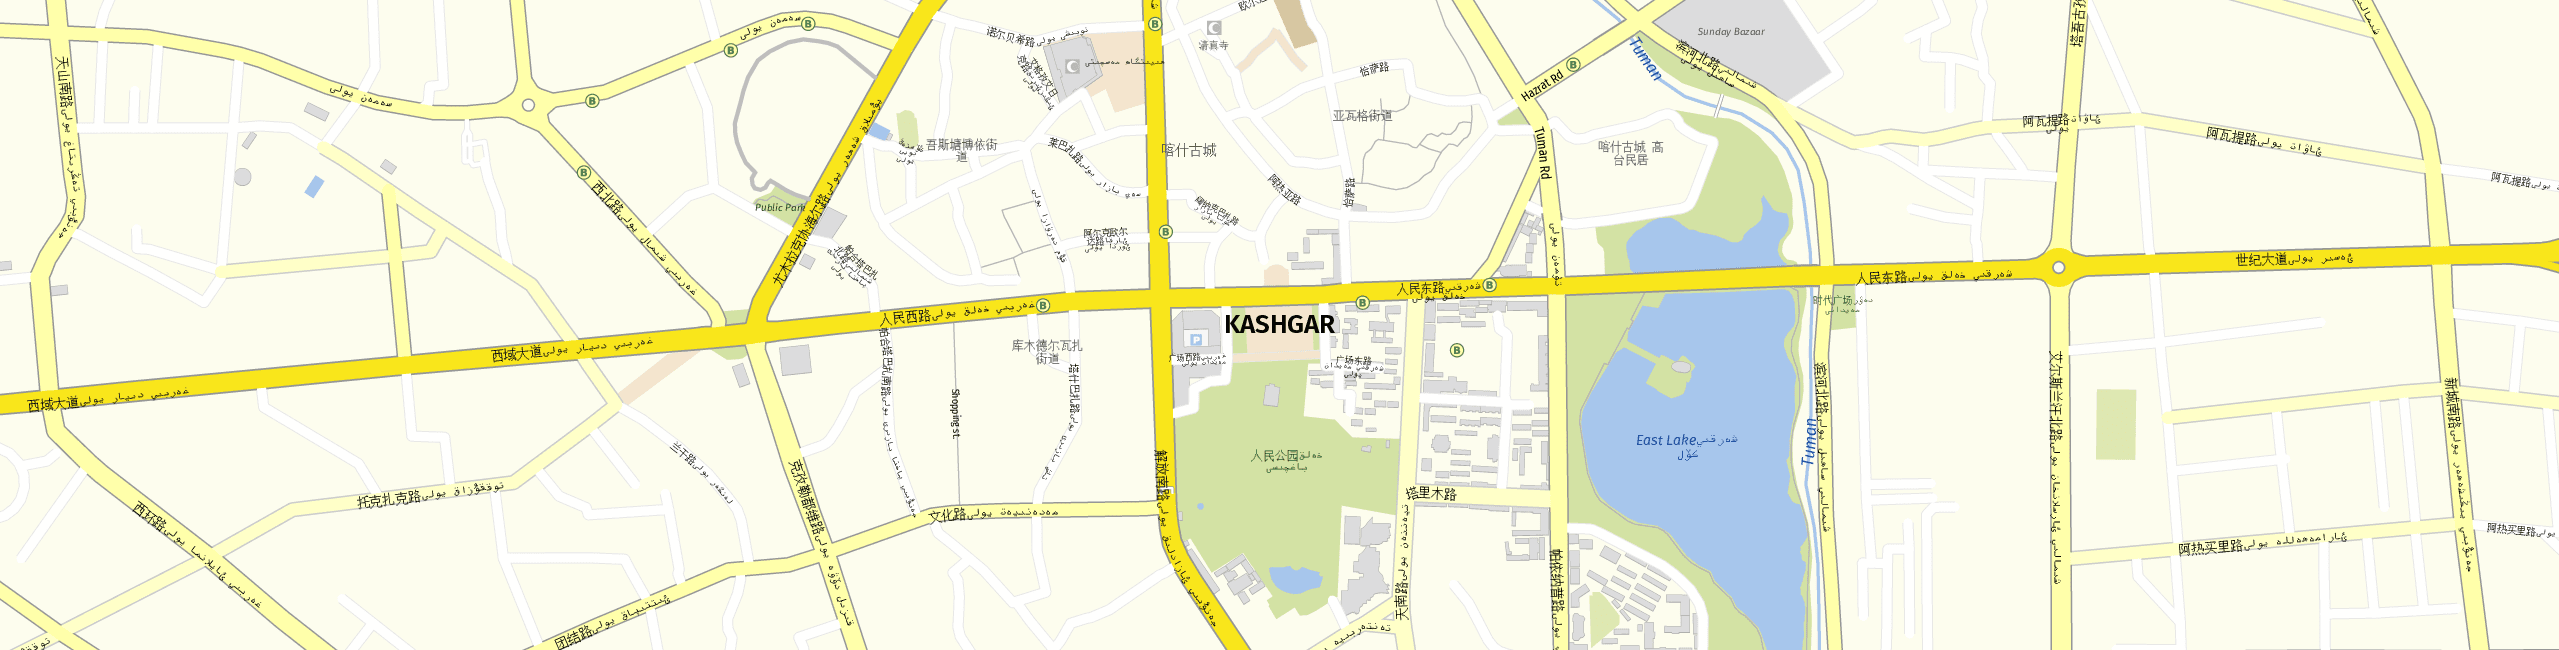 Stadtplan Kashgar zum Downloaden.